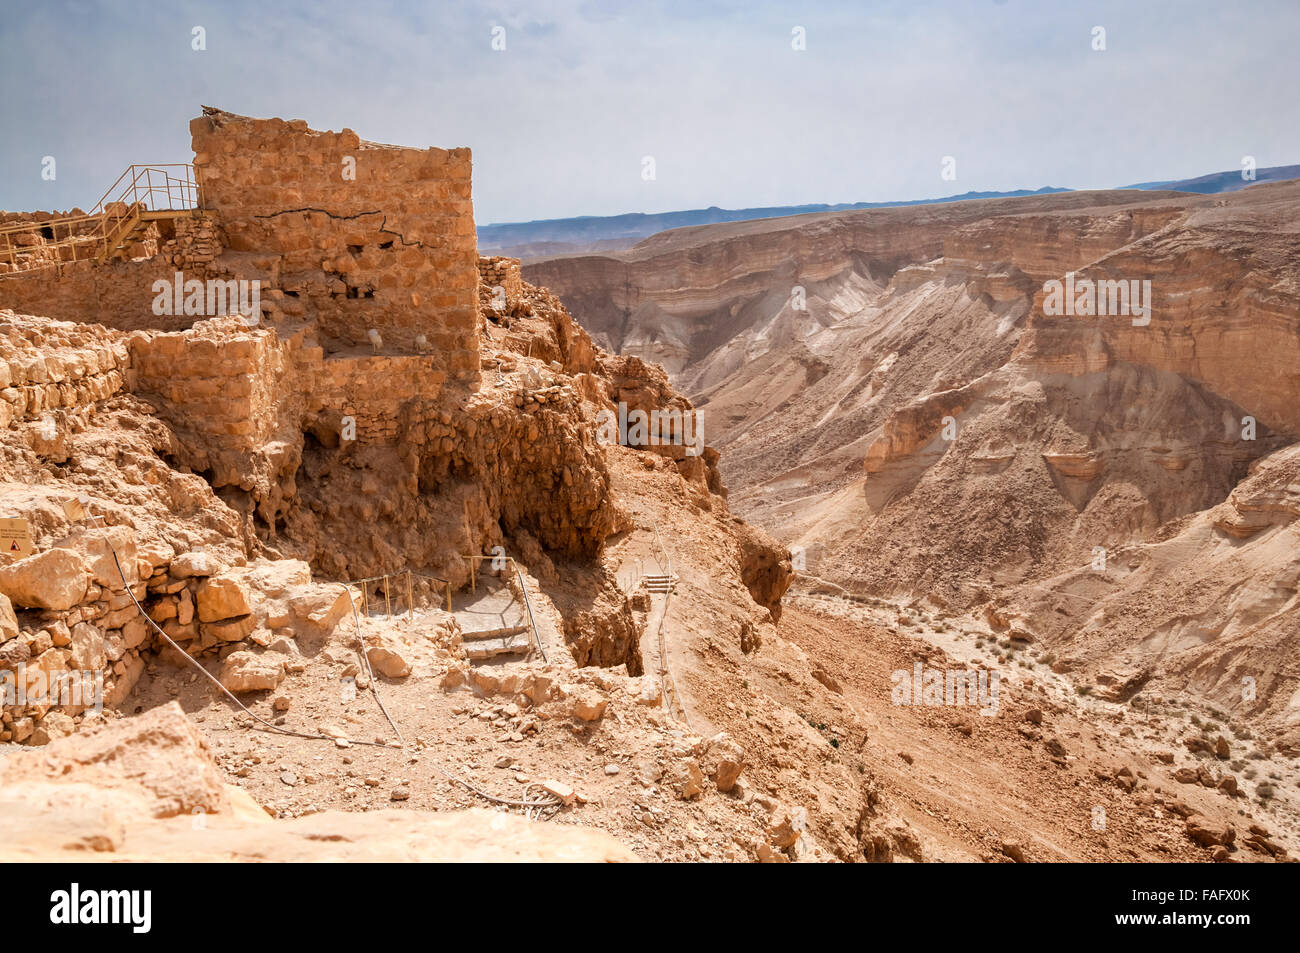 Masada - antica fortezza nel sud di Israele, sul bordo orientale del Deserto della Giudea affacciata sul Mar Morto. Dopo la F Foto Stock